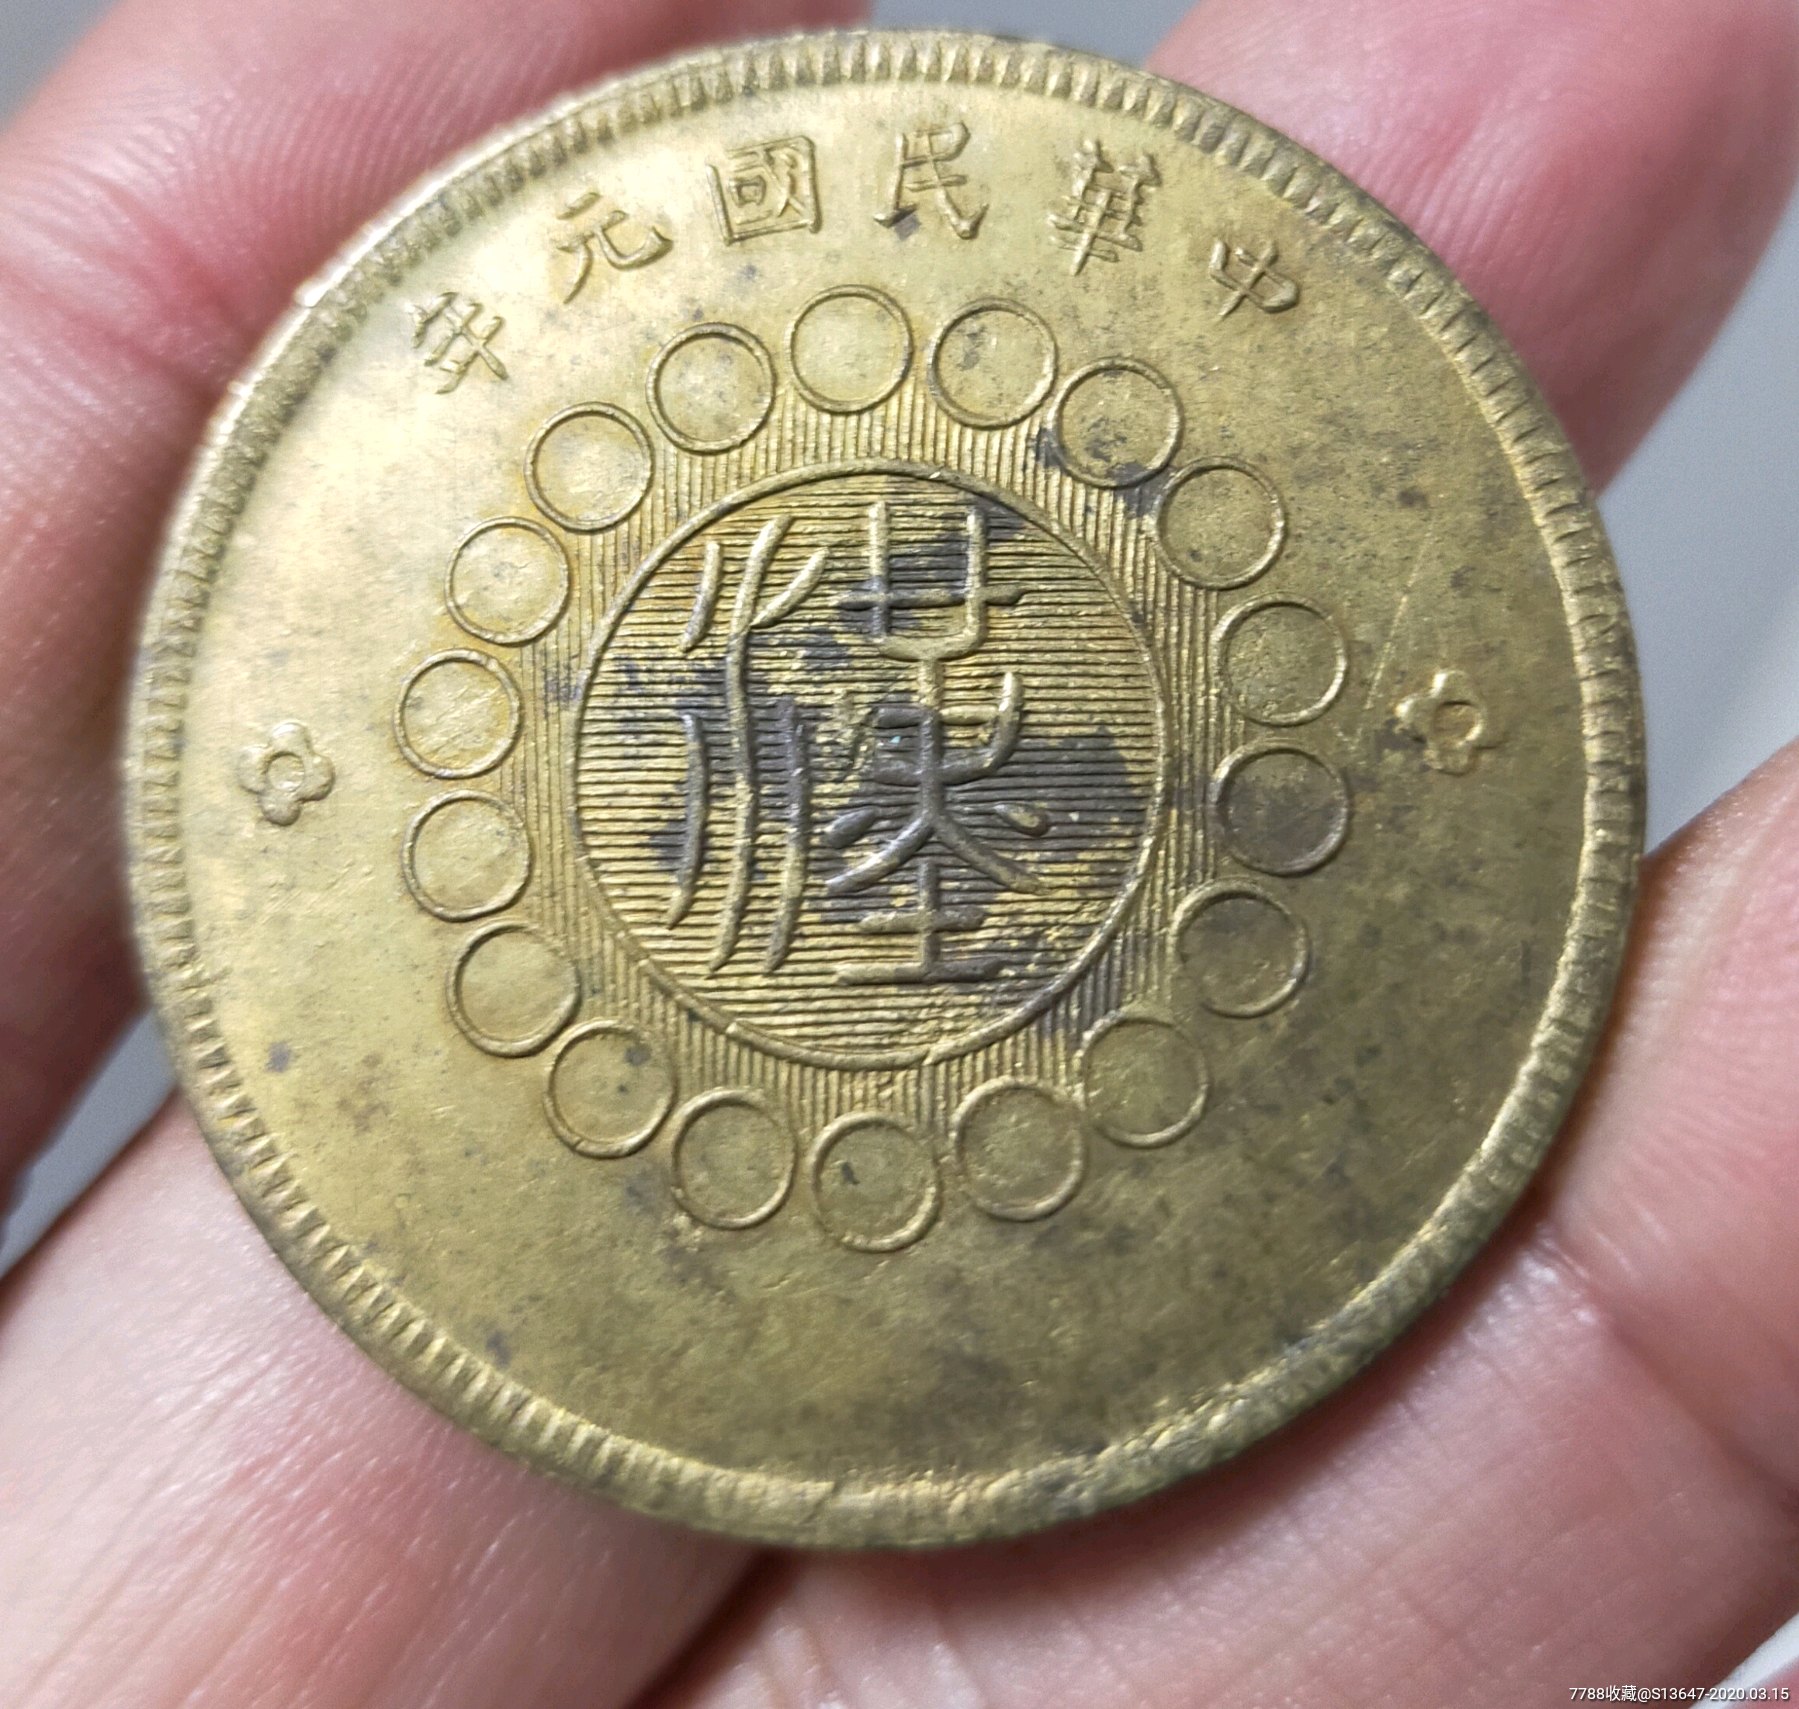 大汉铜币赝品图片